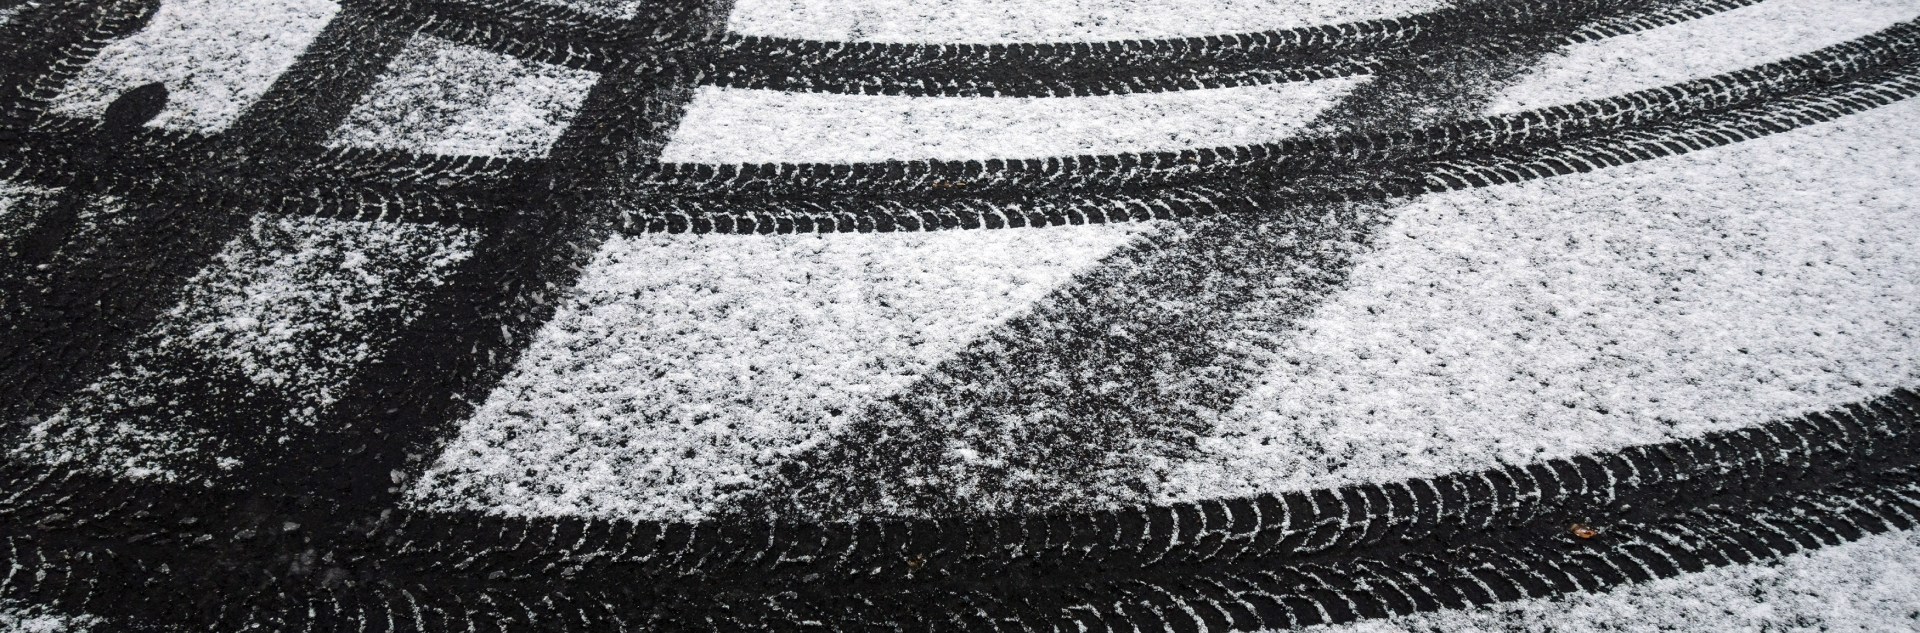 tire-marks-on-snowy-asphalt-2022-01-12-00-26-26-utc 1